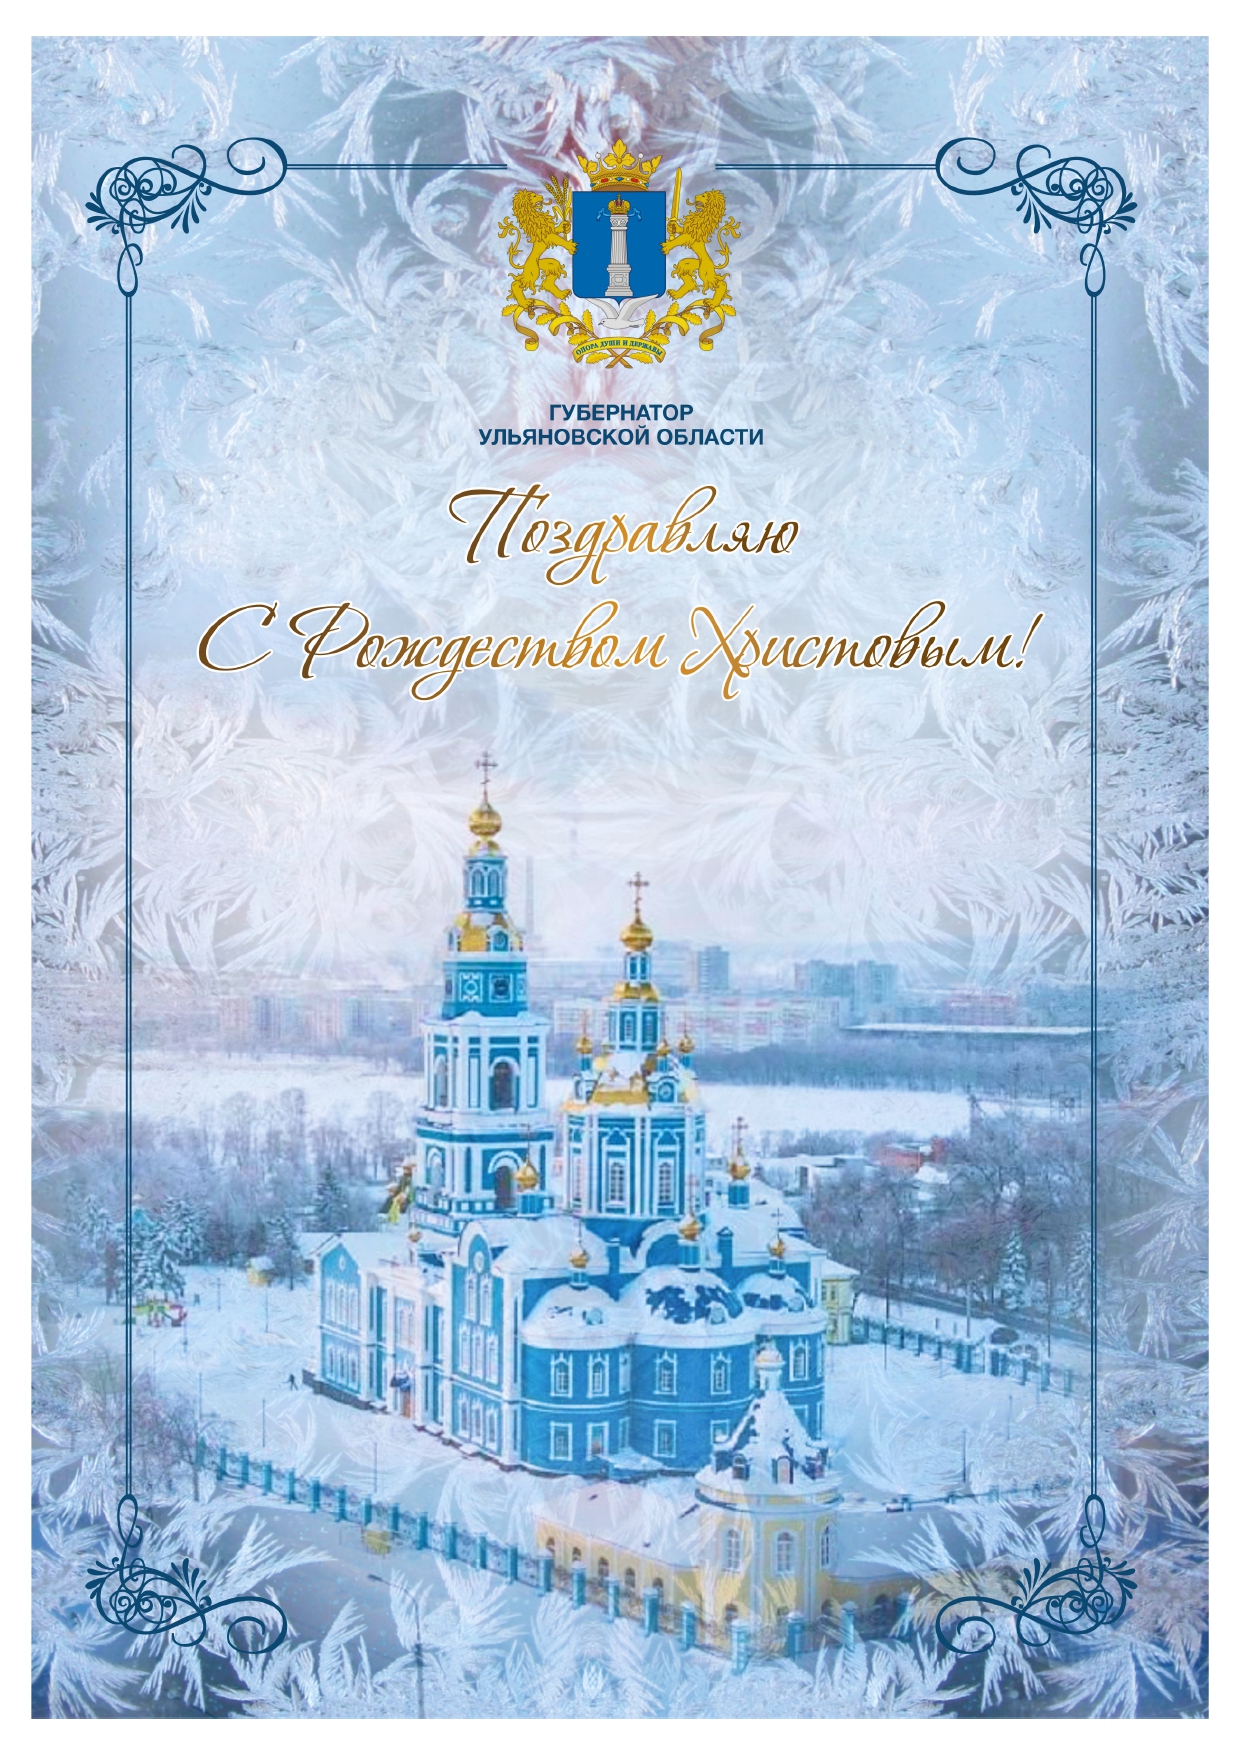 Поздравление с Рождеством Христовым от губернатора Алексея Русских.